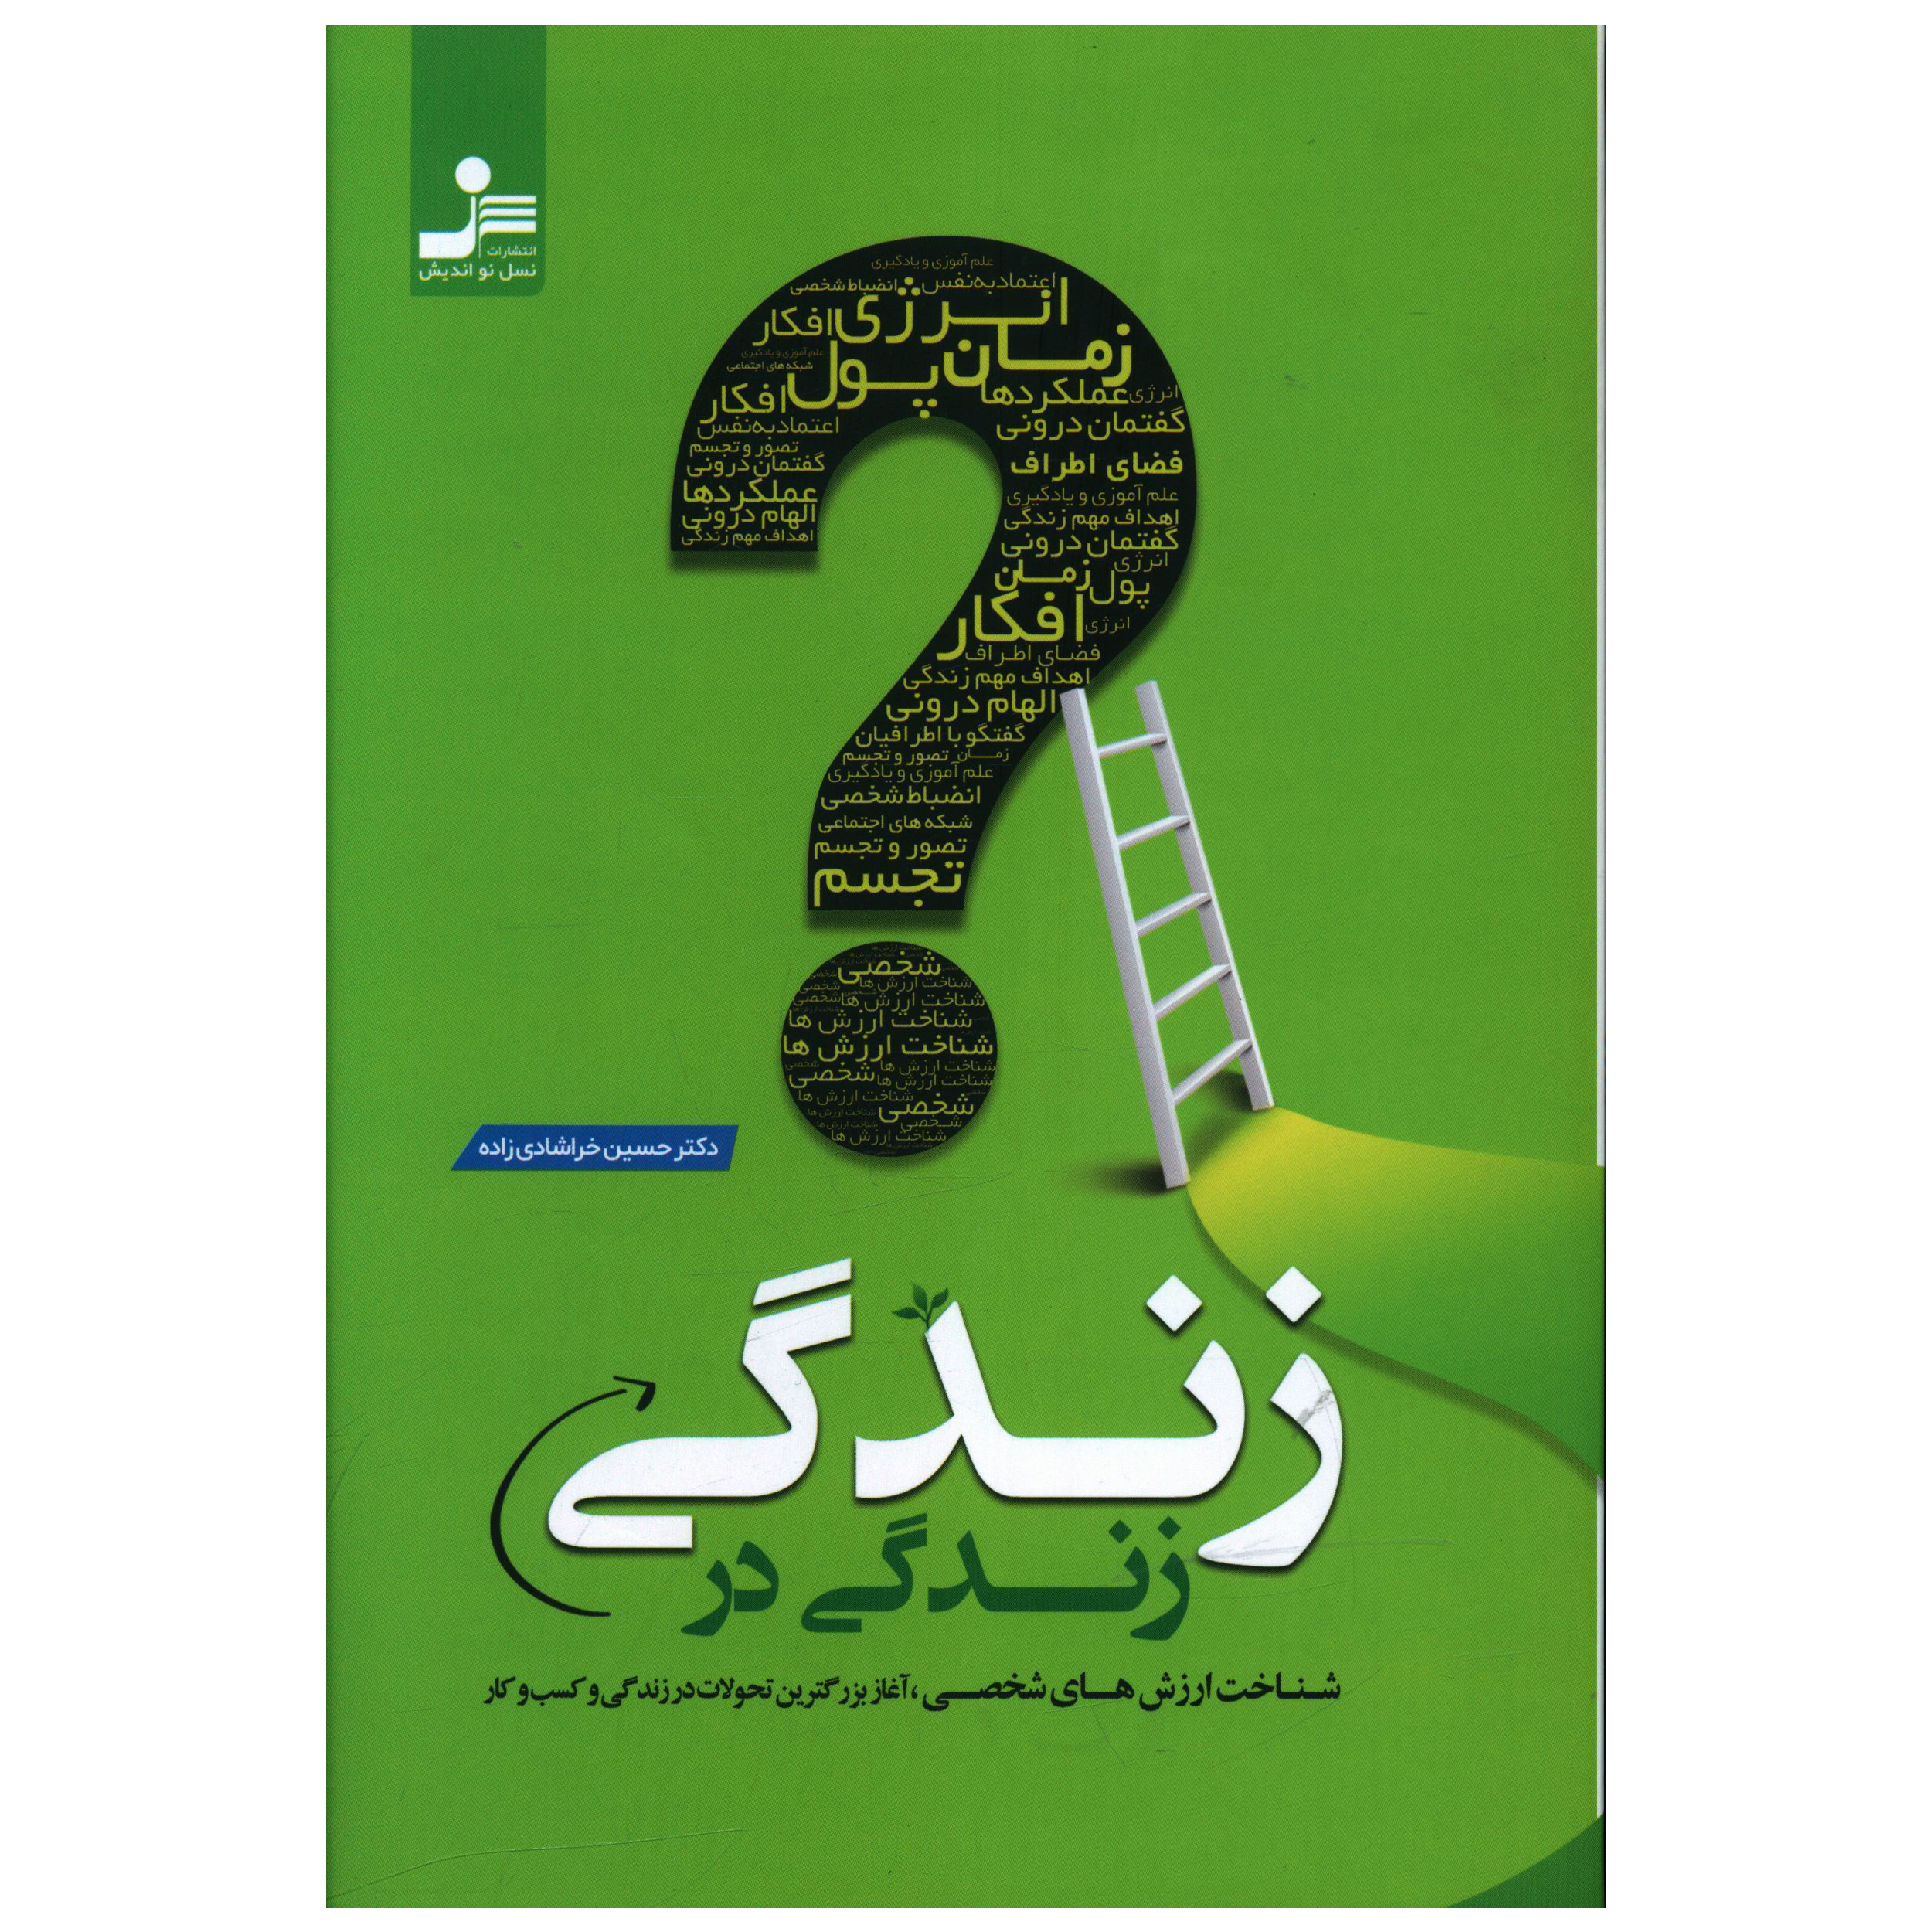 کتاب زندگي در زندگي اثر حسين خرشادي زاده نشر نسل نواندیش 